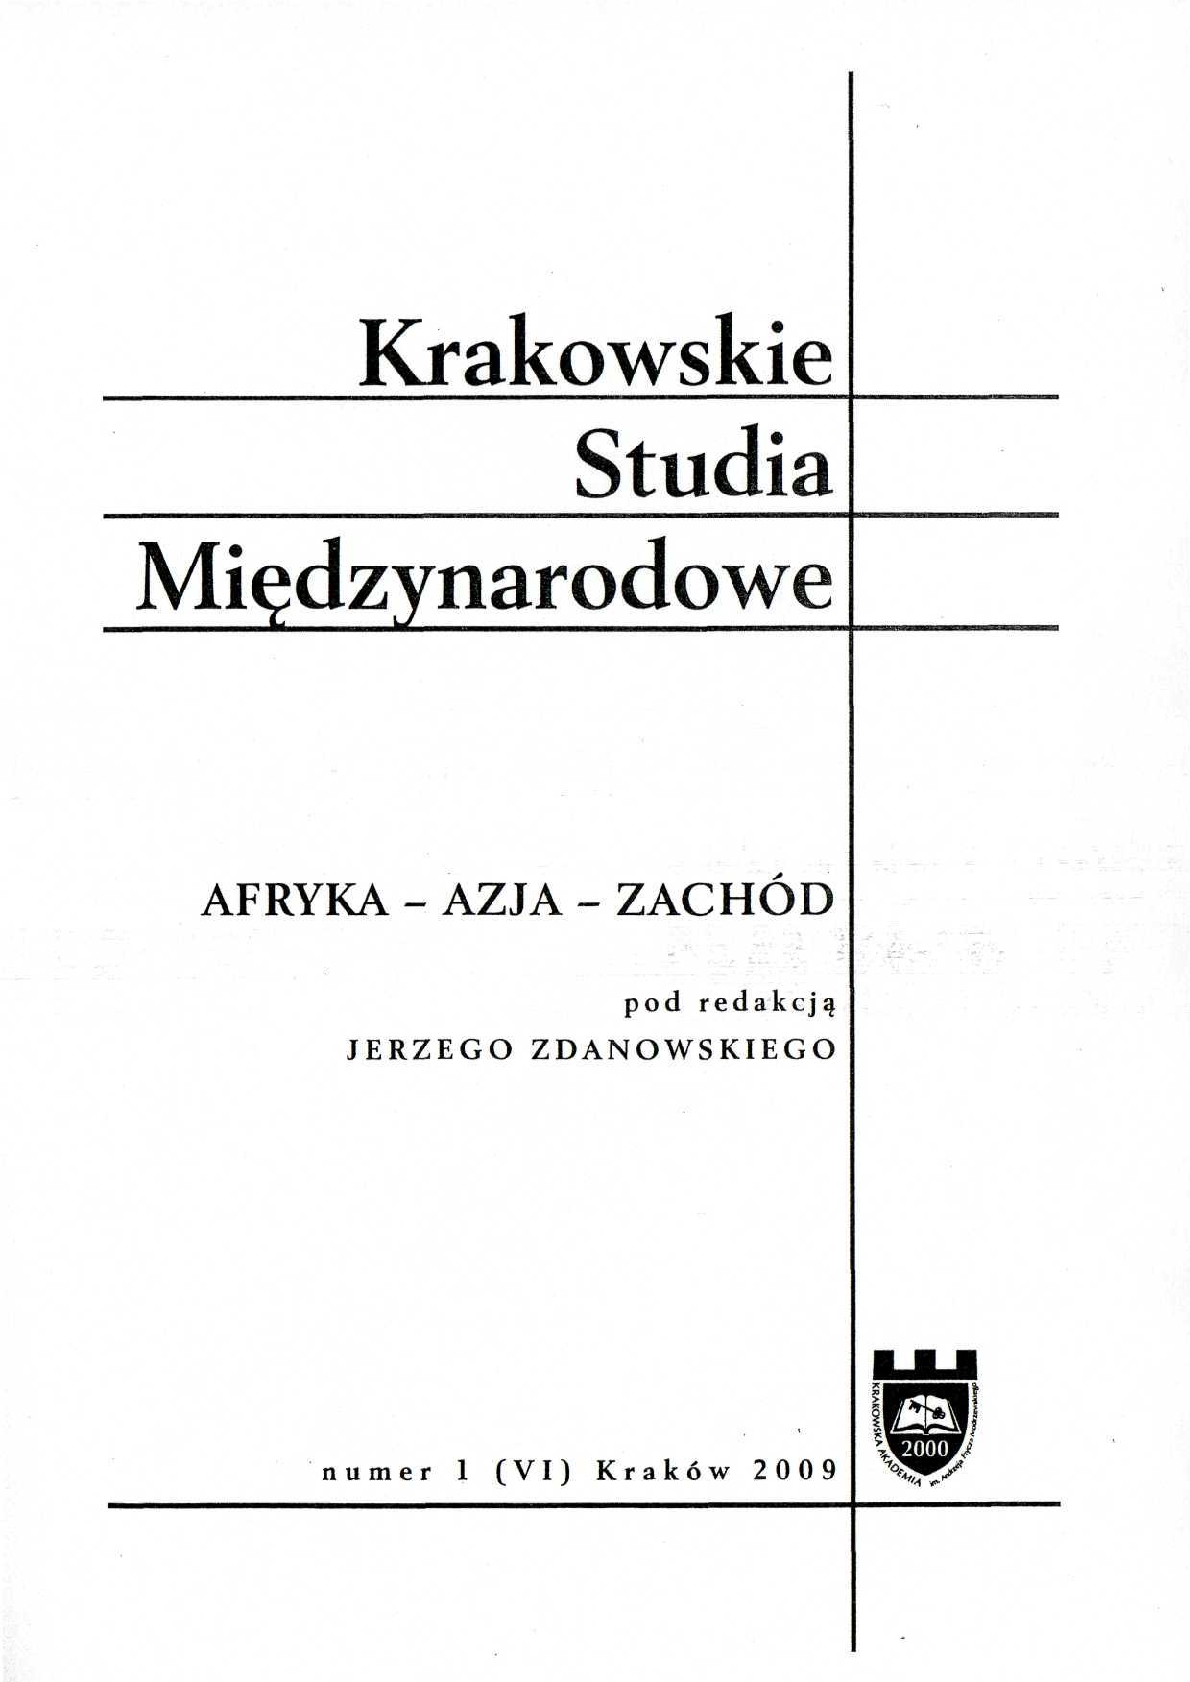 Jakub Zajączkowski, Indie w stosunkach międzynarodowych, [Wydawnictwo Naukowe Scholar, Warszawa 2008, 304 s.]